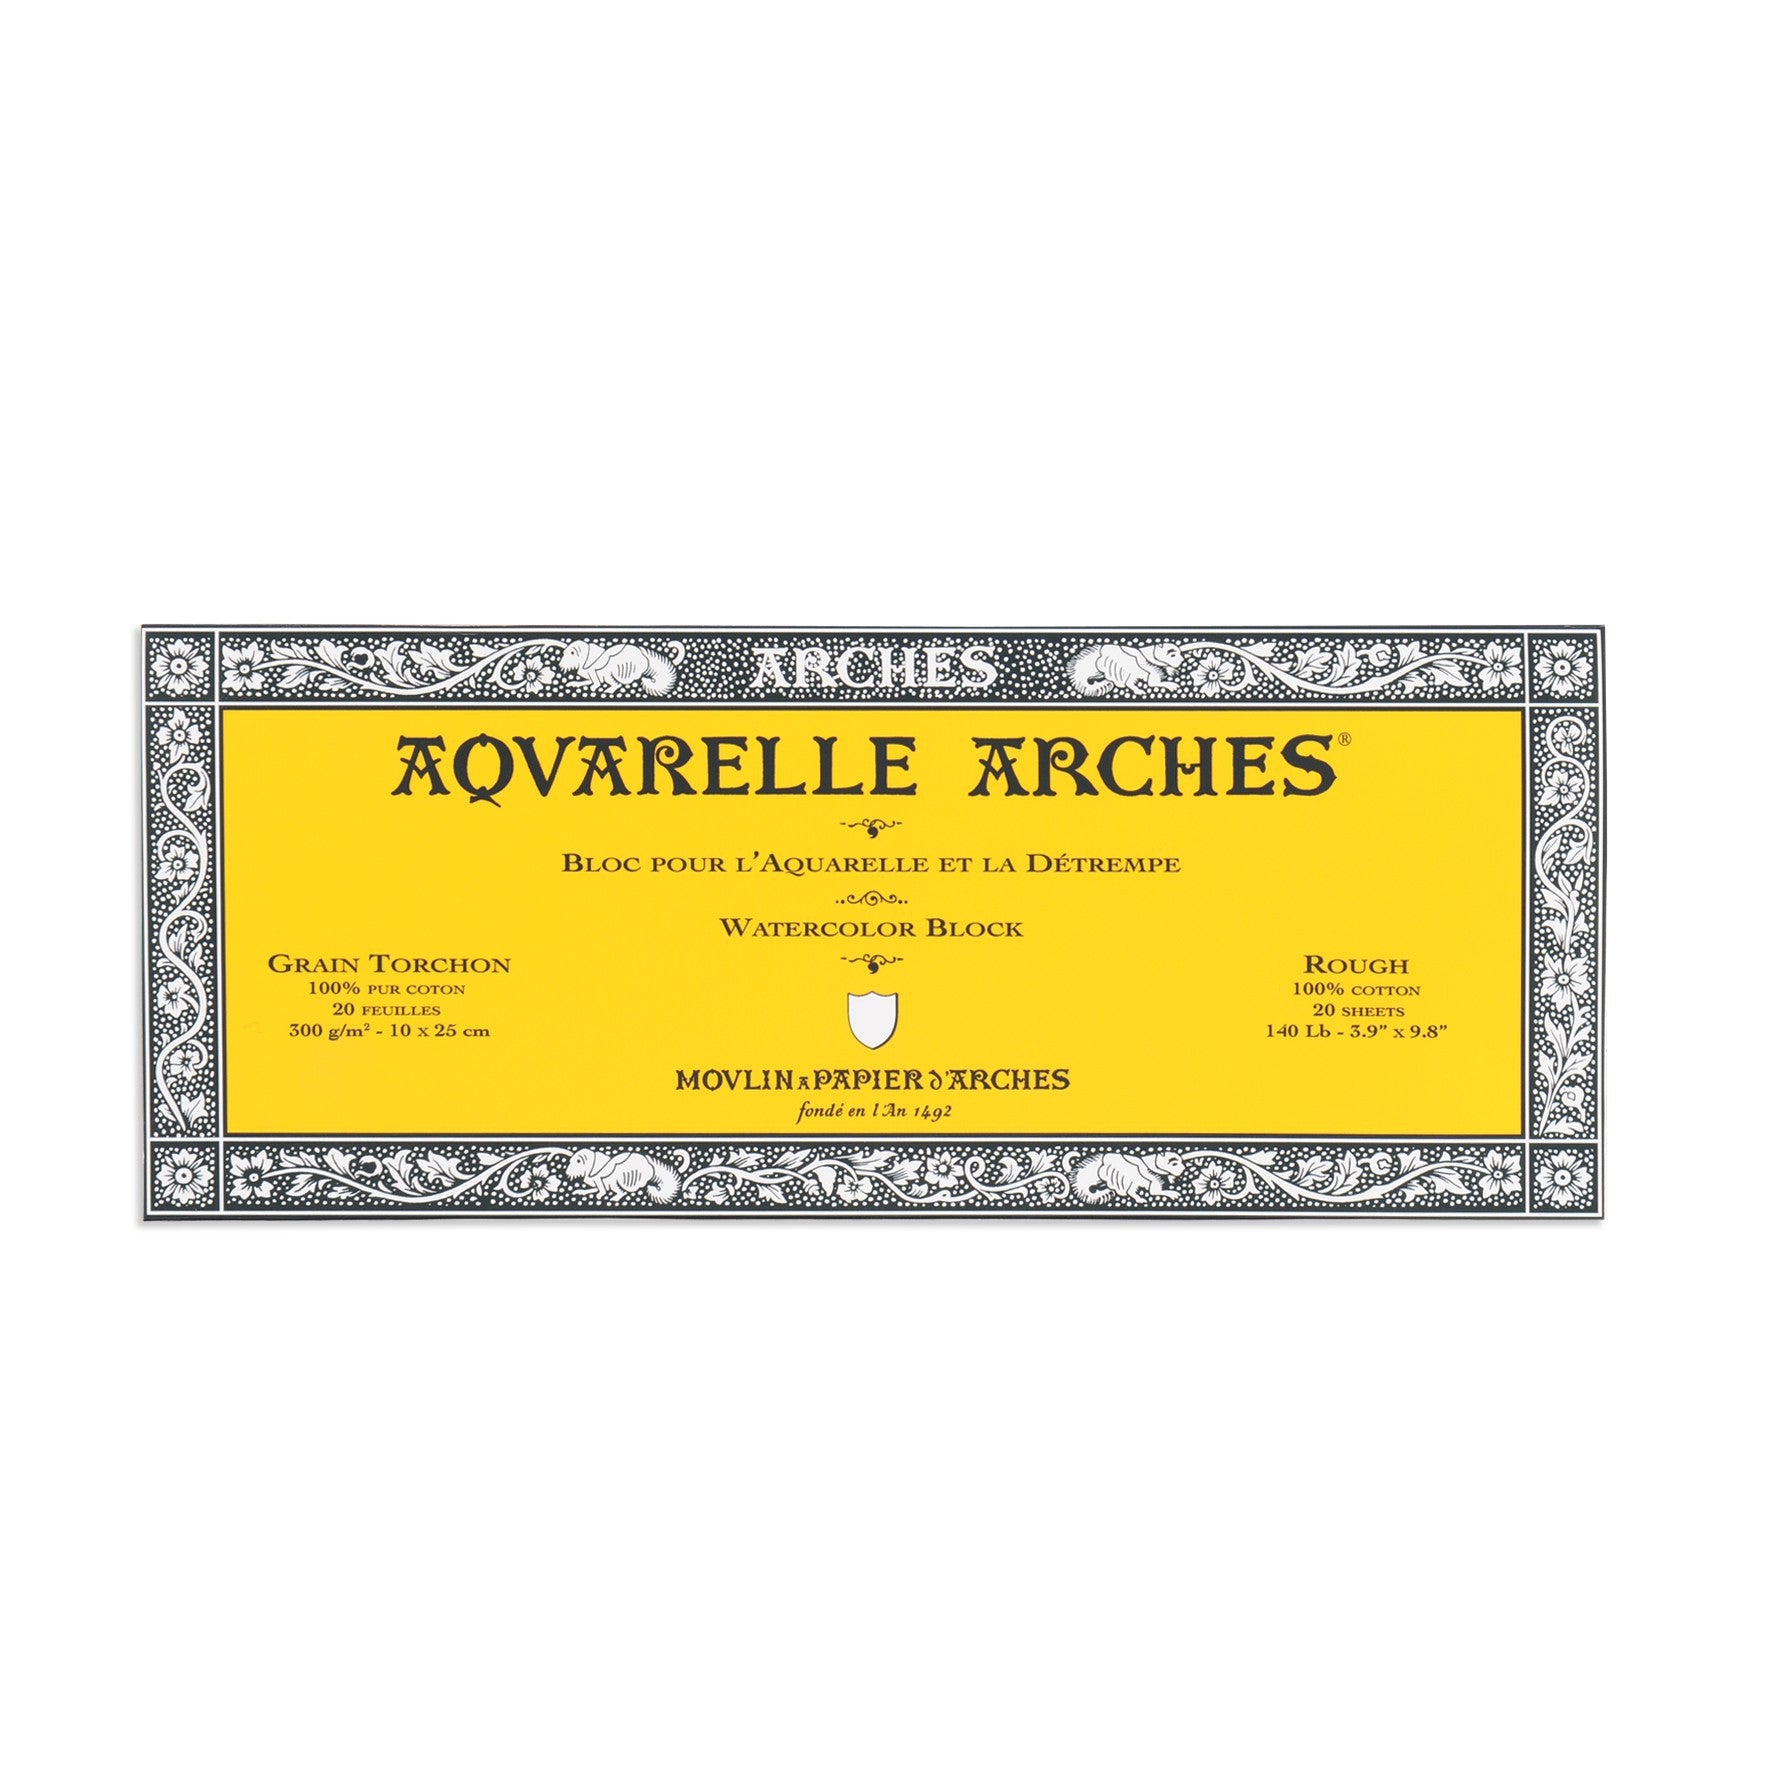 Papier aquarelle Arches bloc de 20 feuilles 36 x 51cm 300g grain torchon  Arches chez Rougier & Plé